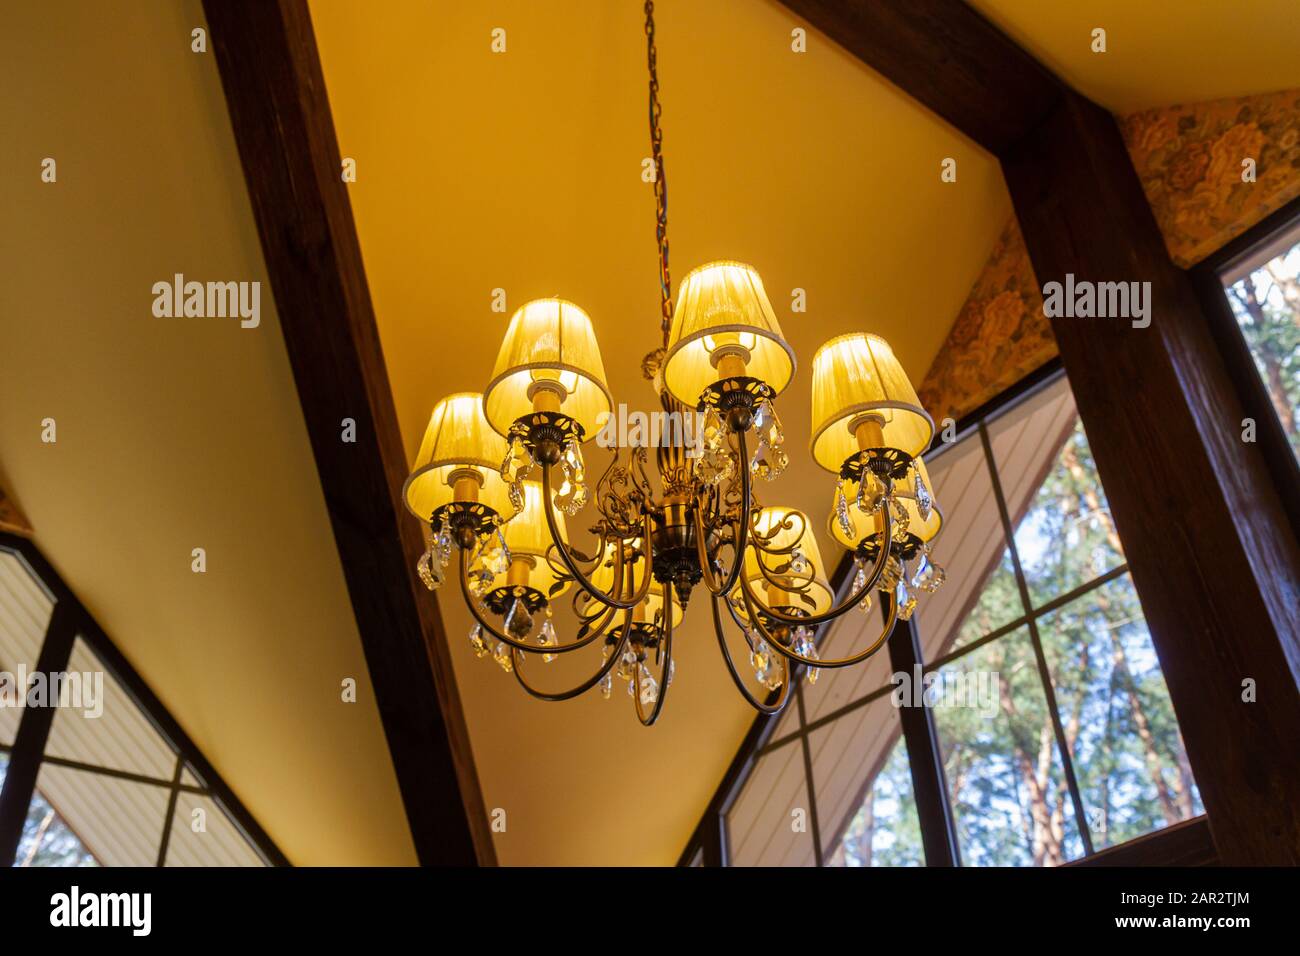 lampadario con una luce piacevole brilla in una casa di legno Foto Stock